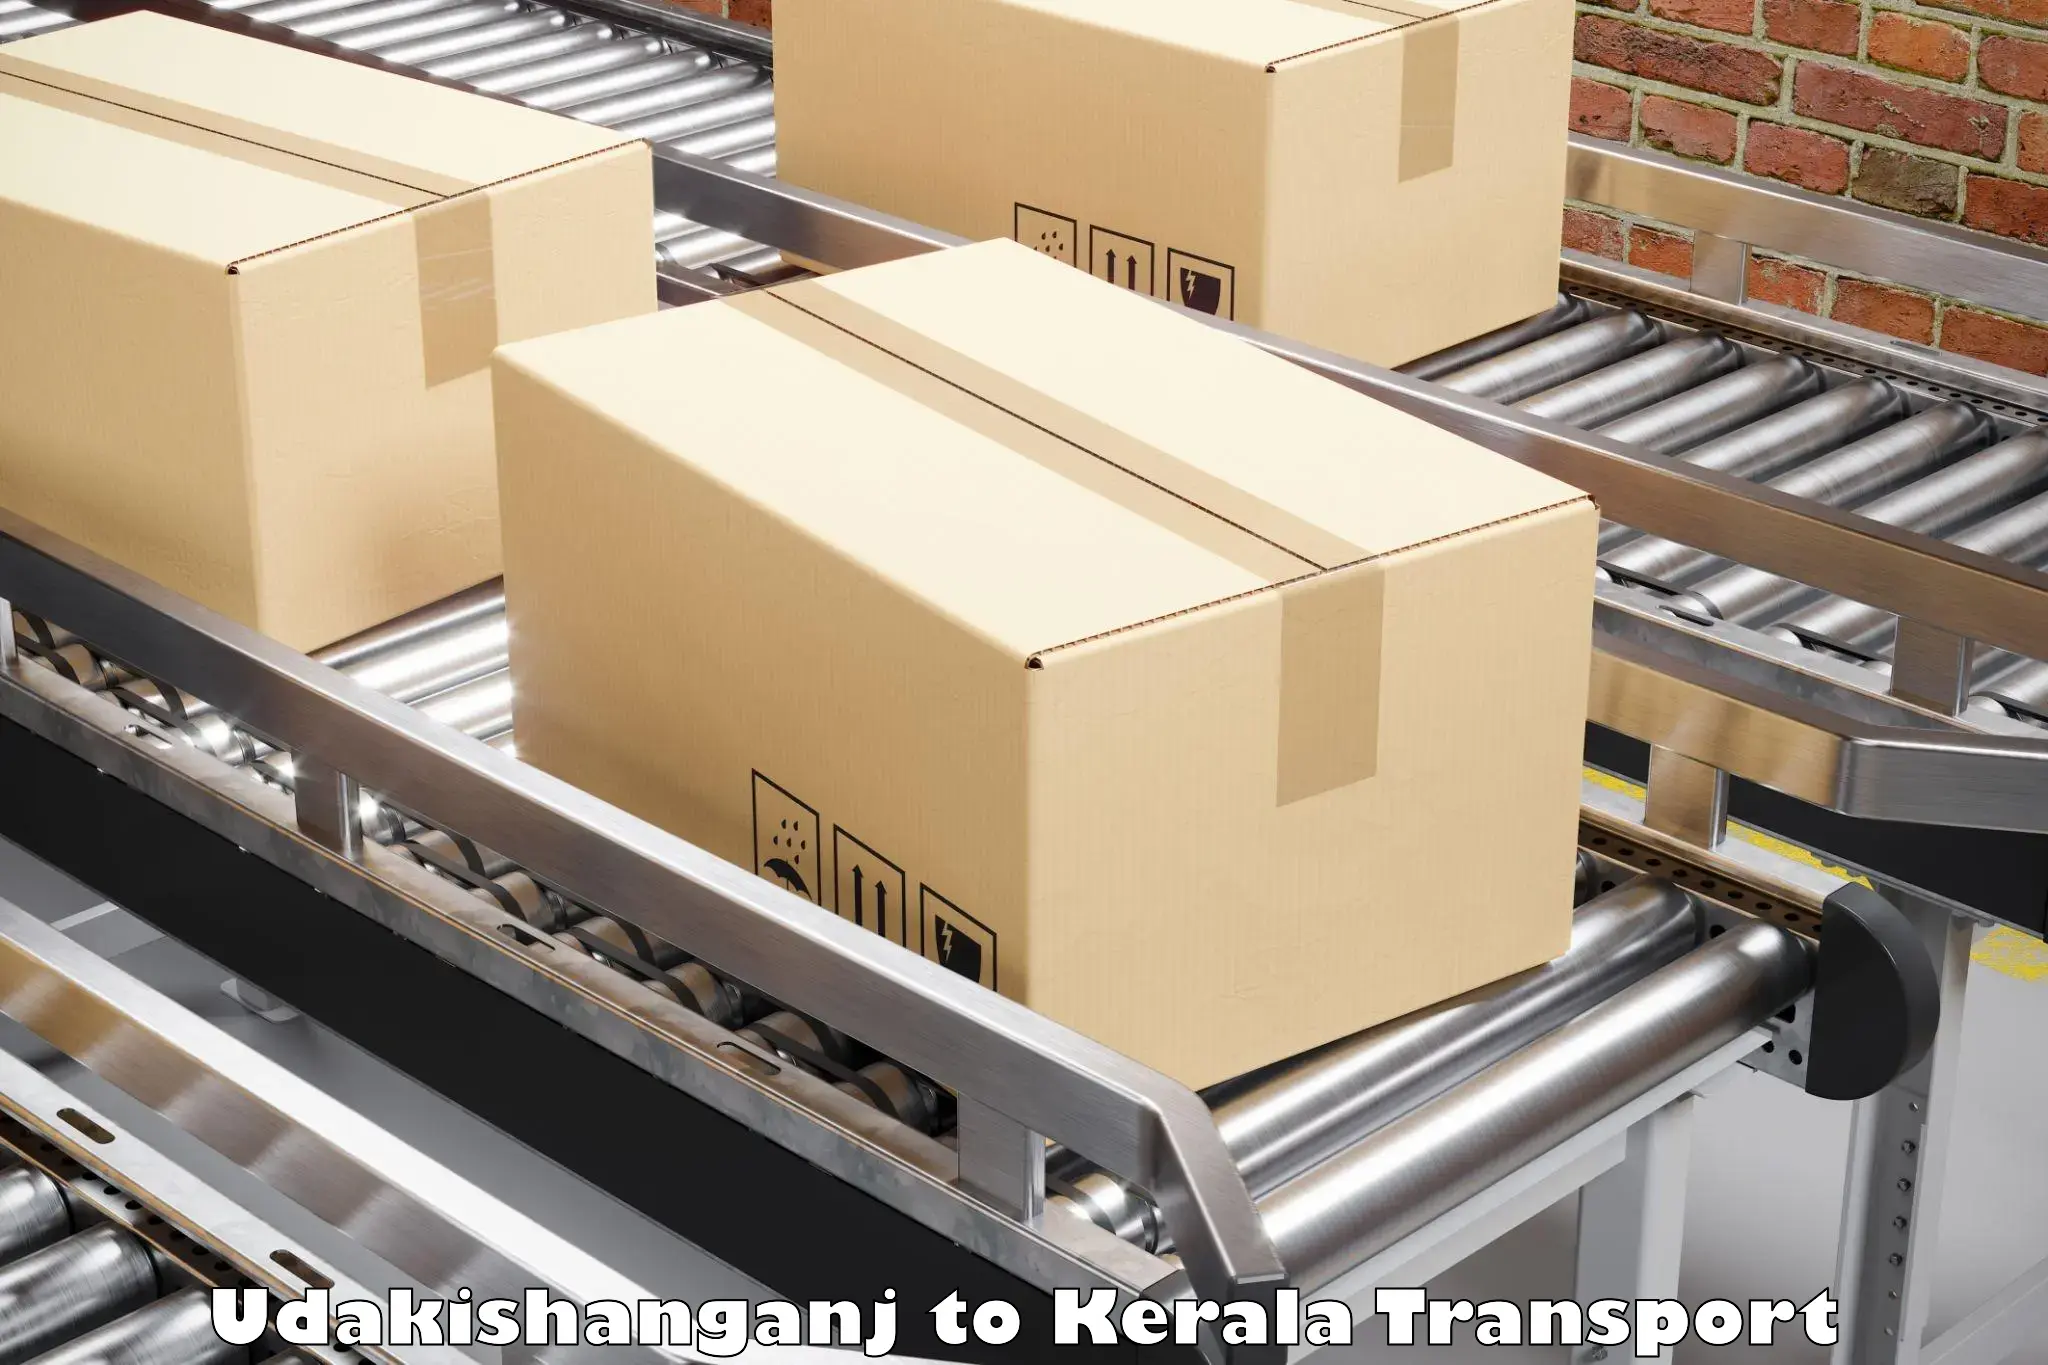 Transport in sharing Udakishanganj to Kuttiady